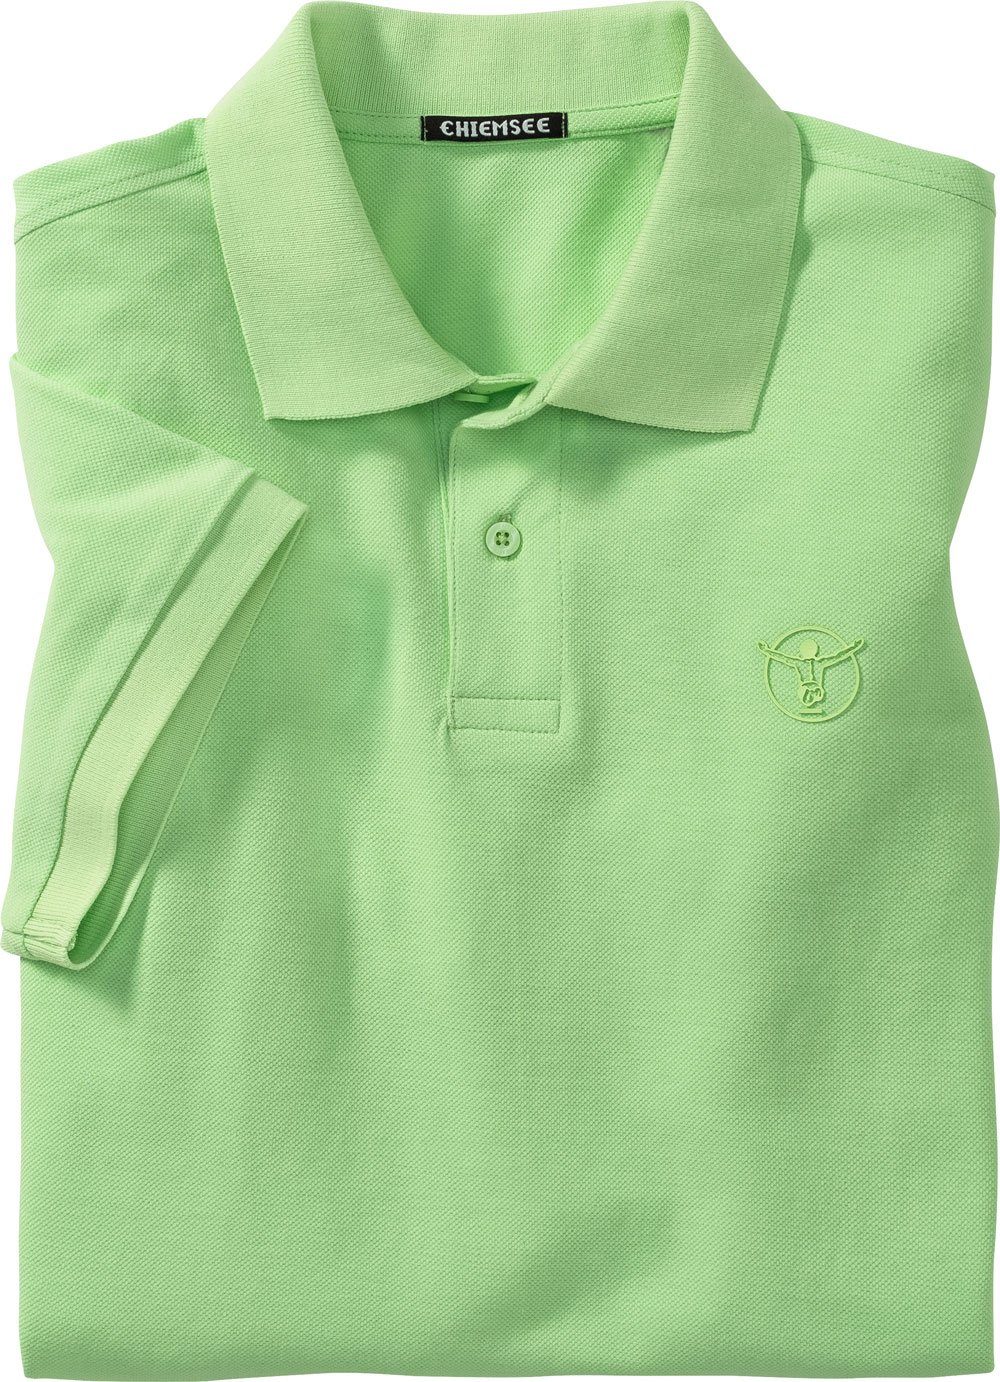 Chiemsee aus reinem hellgrün Baumwoll-Piqué Poloshirt